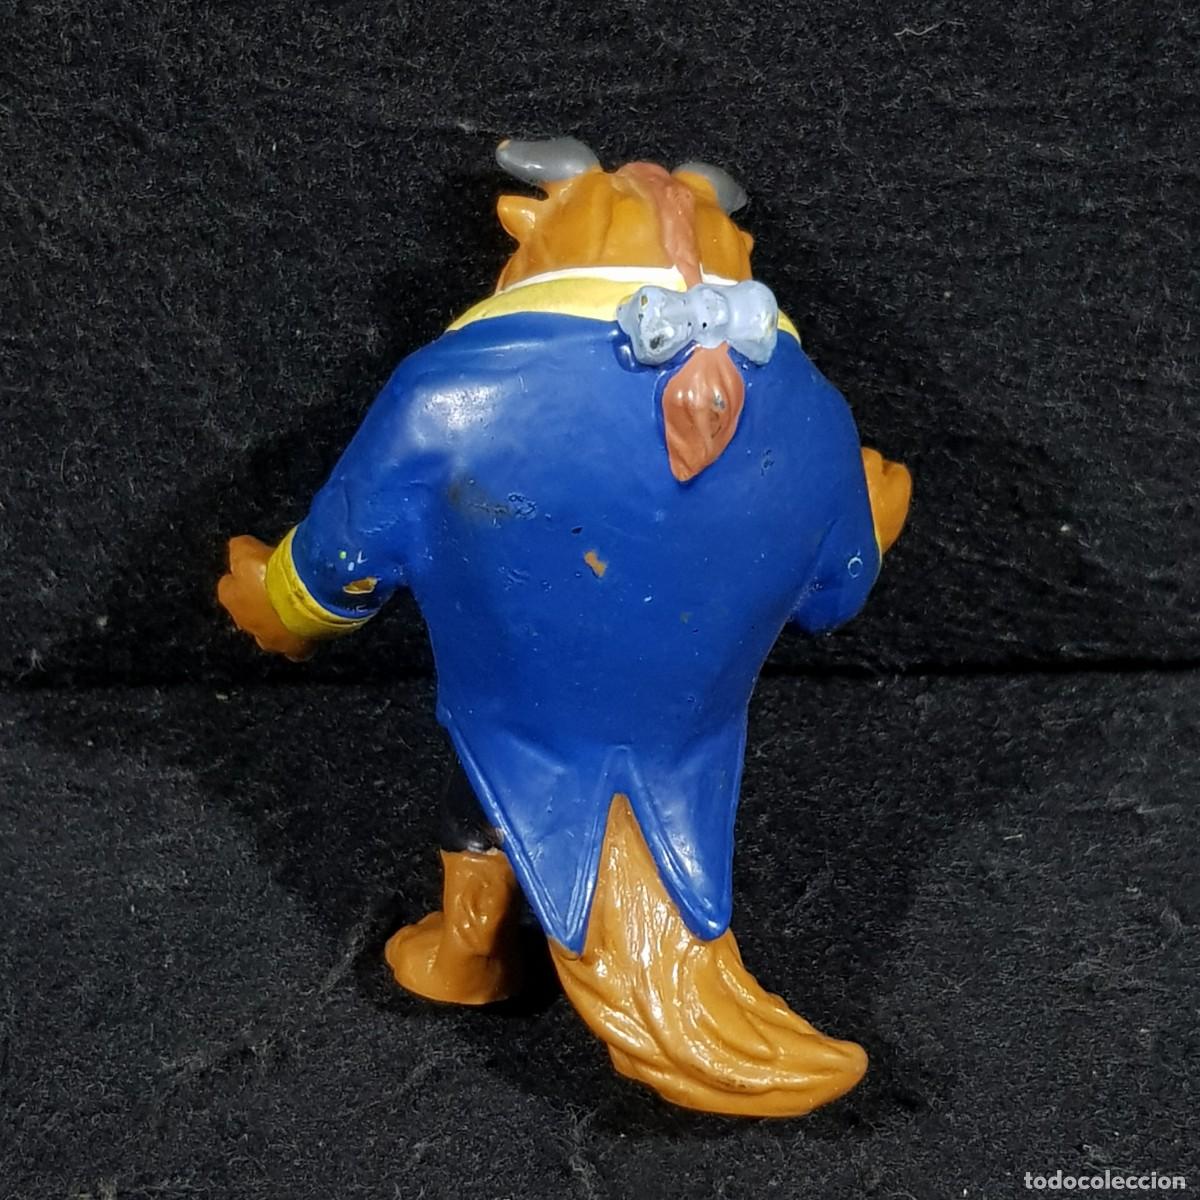 muñeco antiguo pepon mono azul - Compra venta en todocoleccion